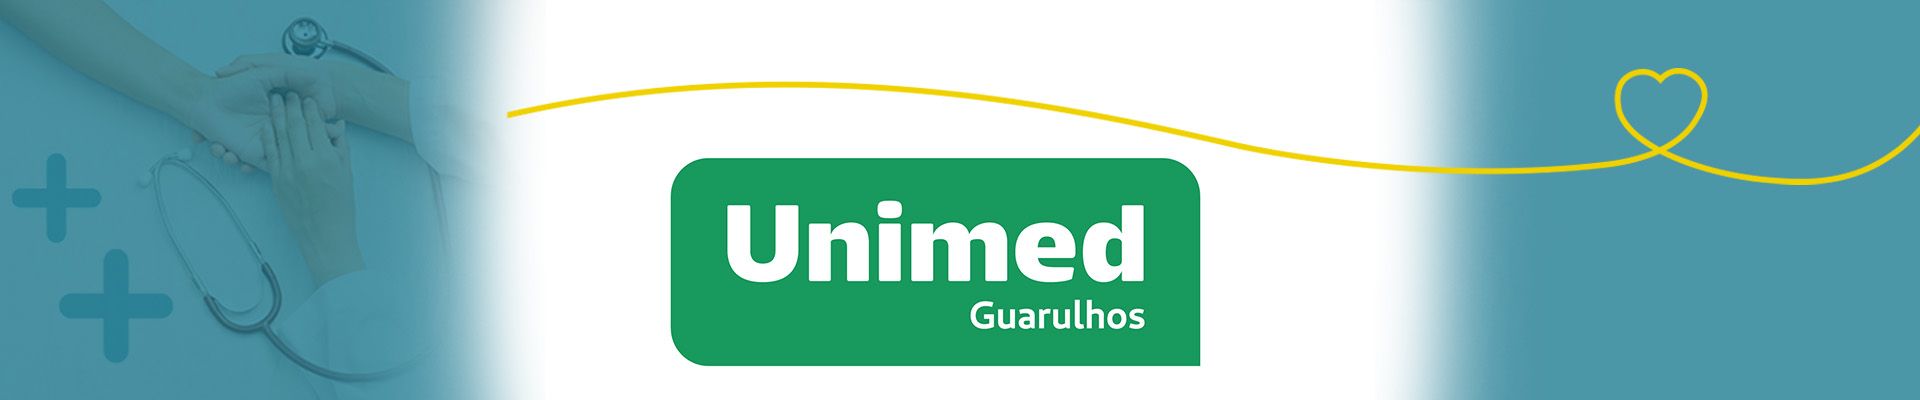 Banner da operadora Unimed